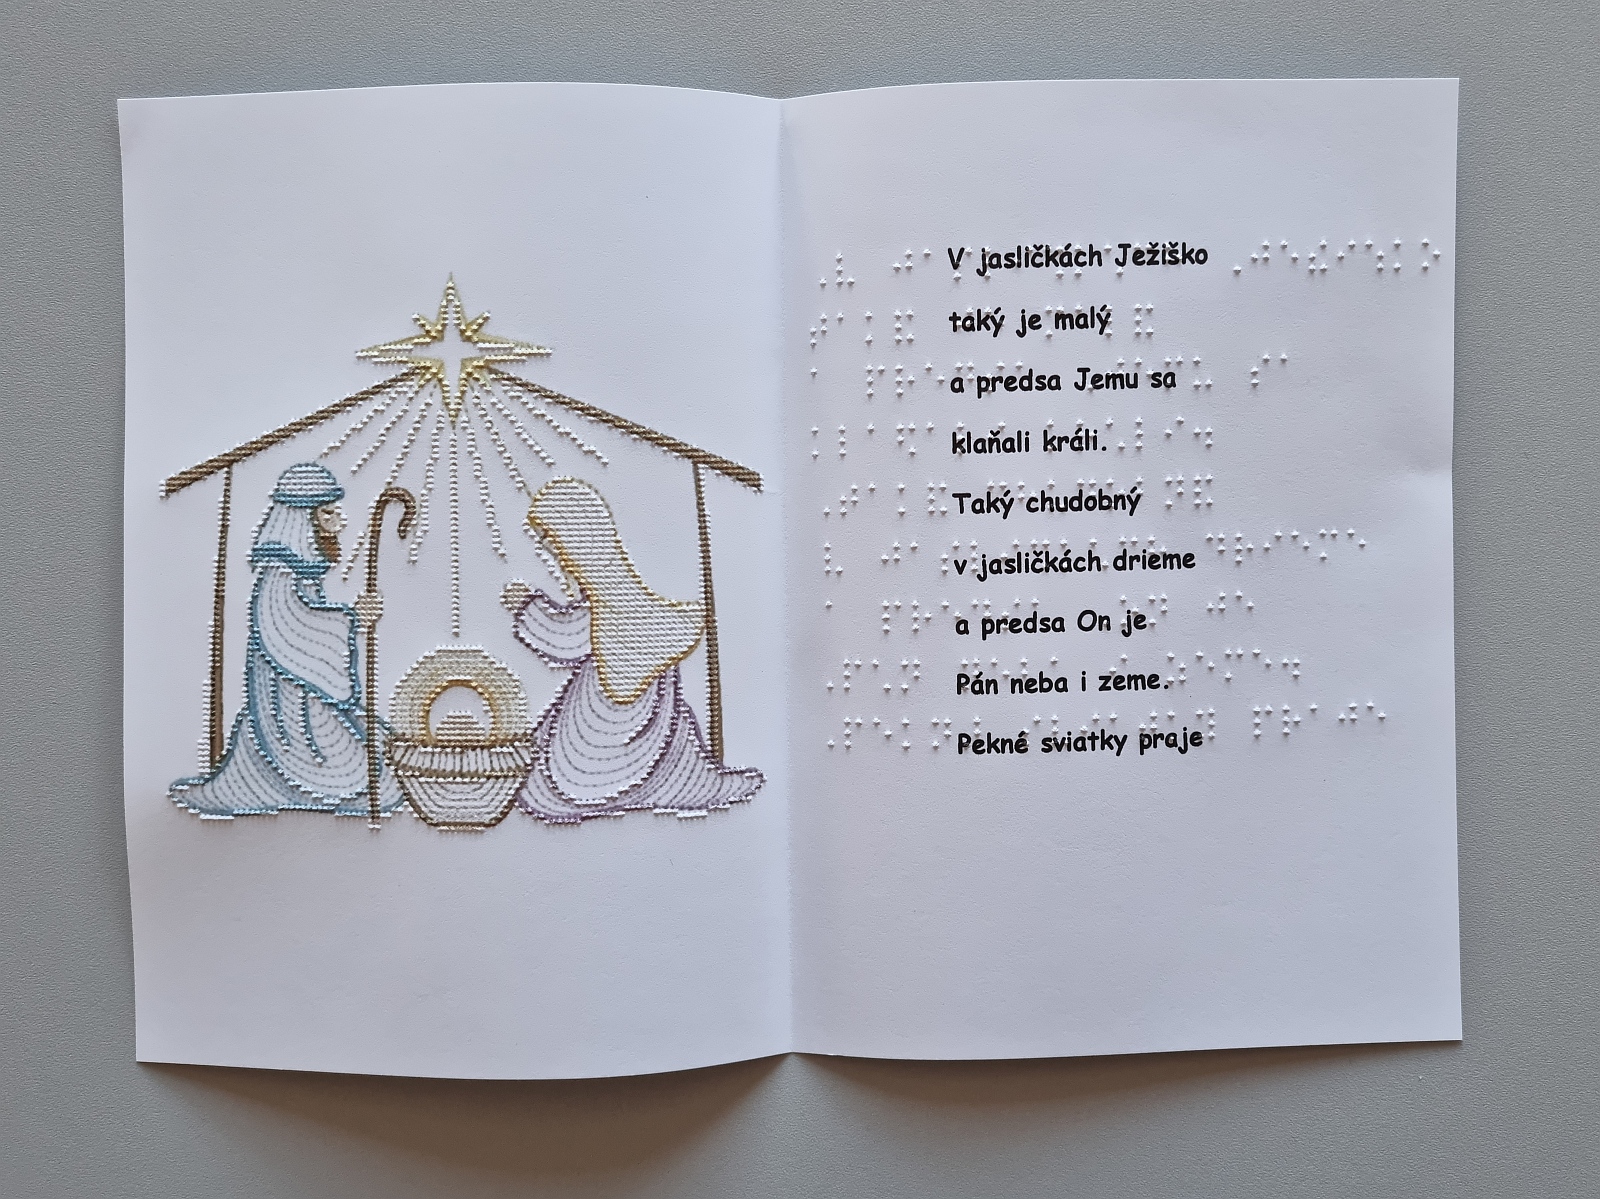 Vianočná pohľadnica, na farebnom obrázku sú vyobrazené jasličky s hviezdou. Text v braili aj čiernotlači.